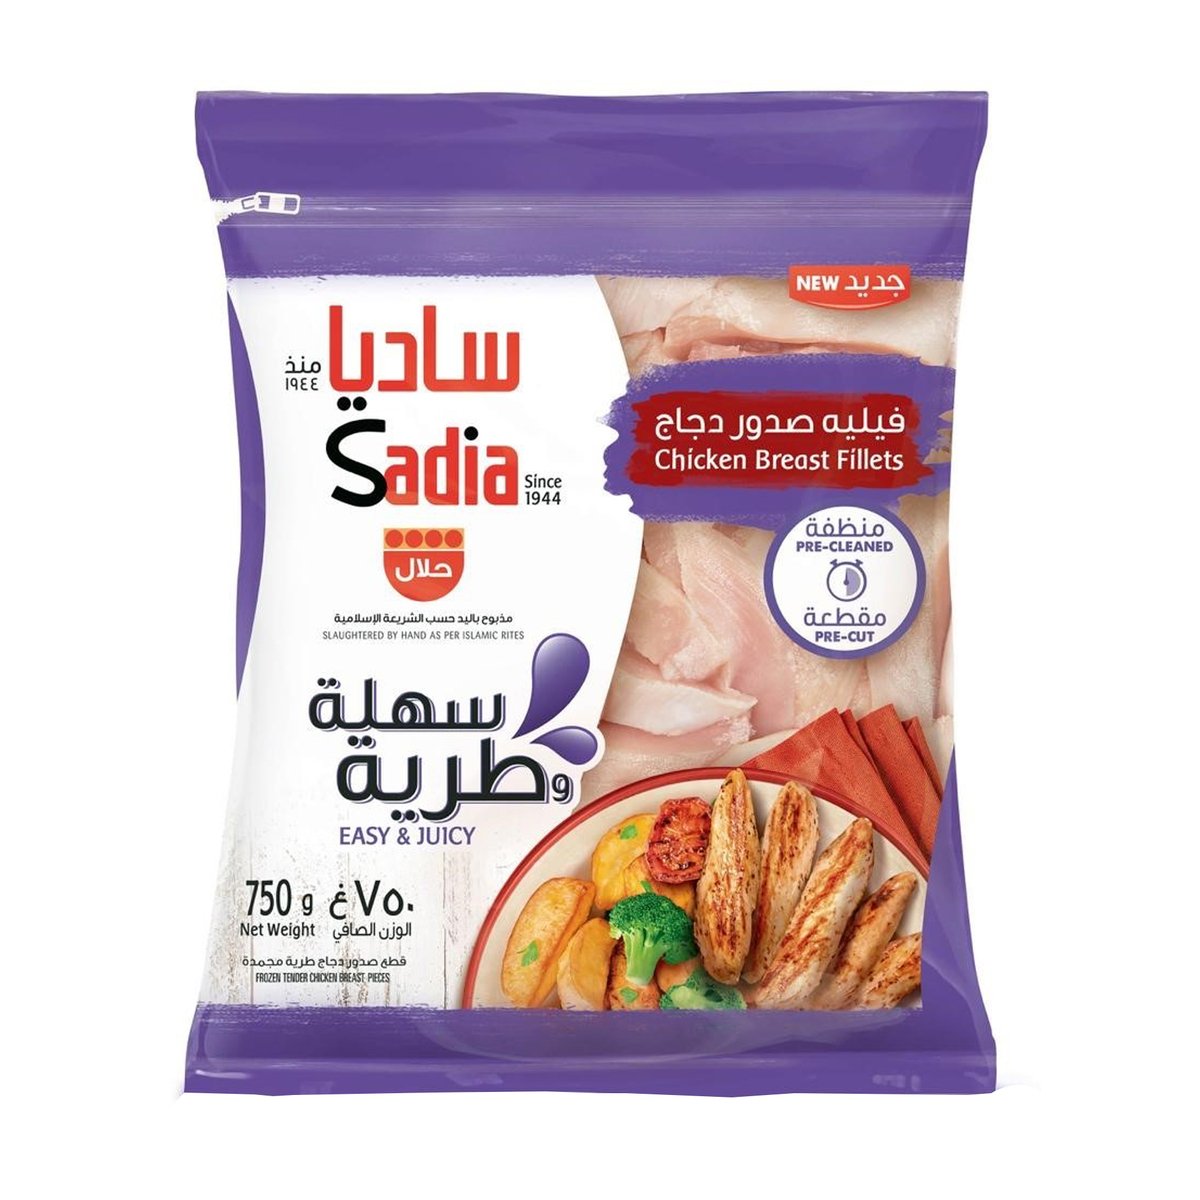 Buy Sadia Chicken Breast Fillet 750 g Online at Best Price | Nuggets | Lulu UAE in Saudi Arabia